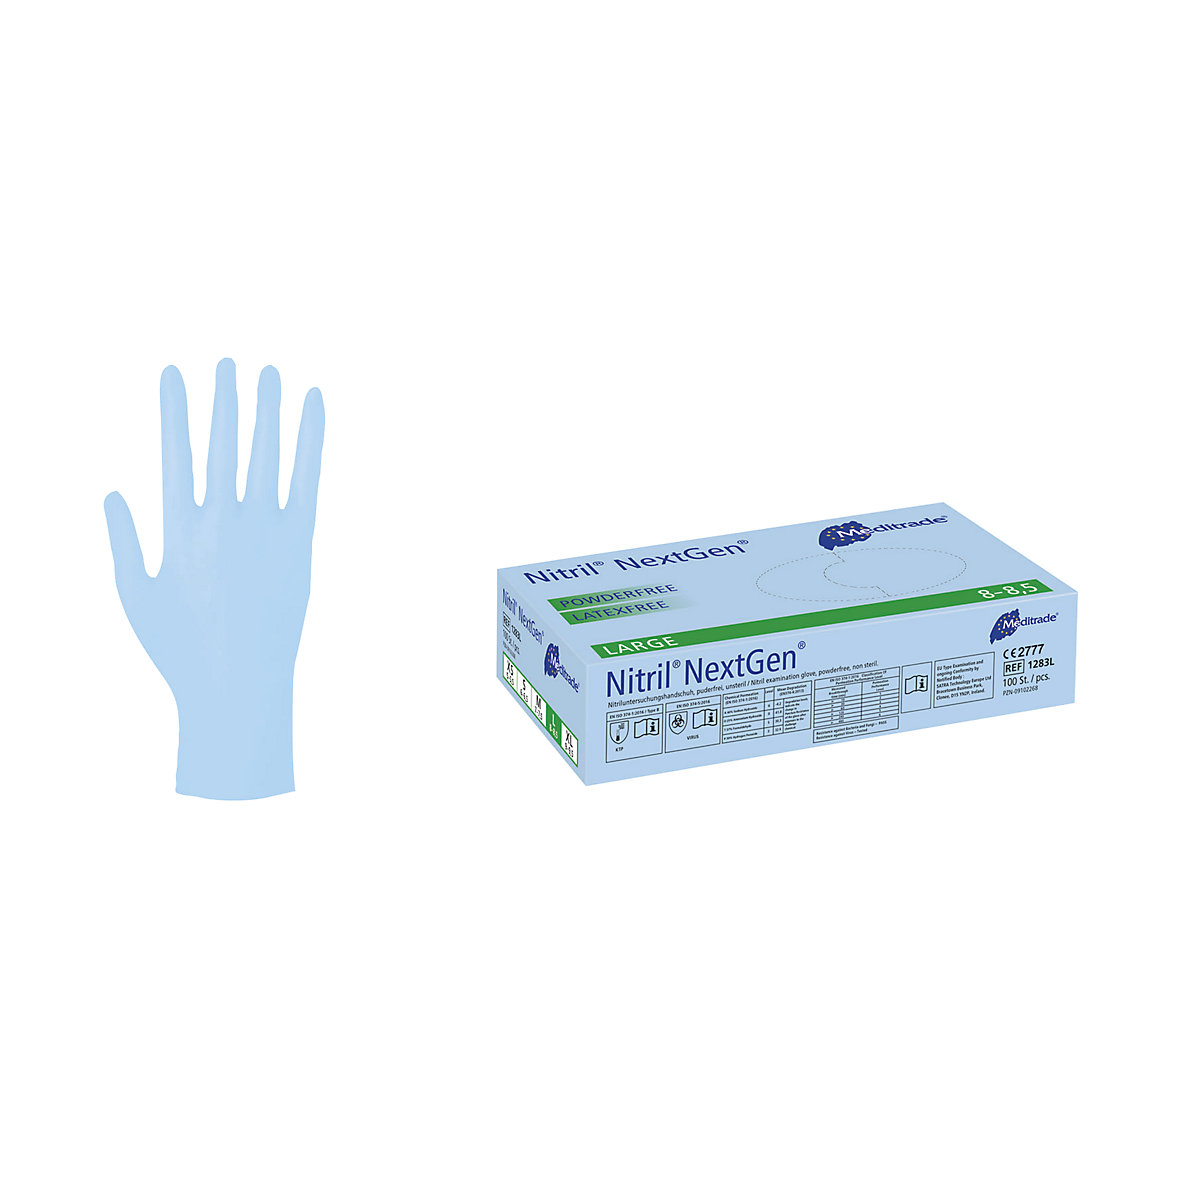 Nitrilne rokavice za enkratno uporabo Meditrade, DE 1000 kosov, primerno za uporabo z živili, modre barve, velikost L, od 3 DE-1